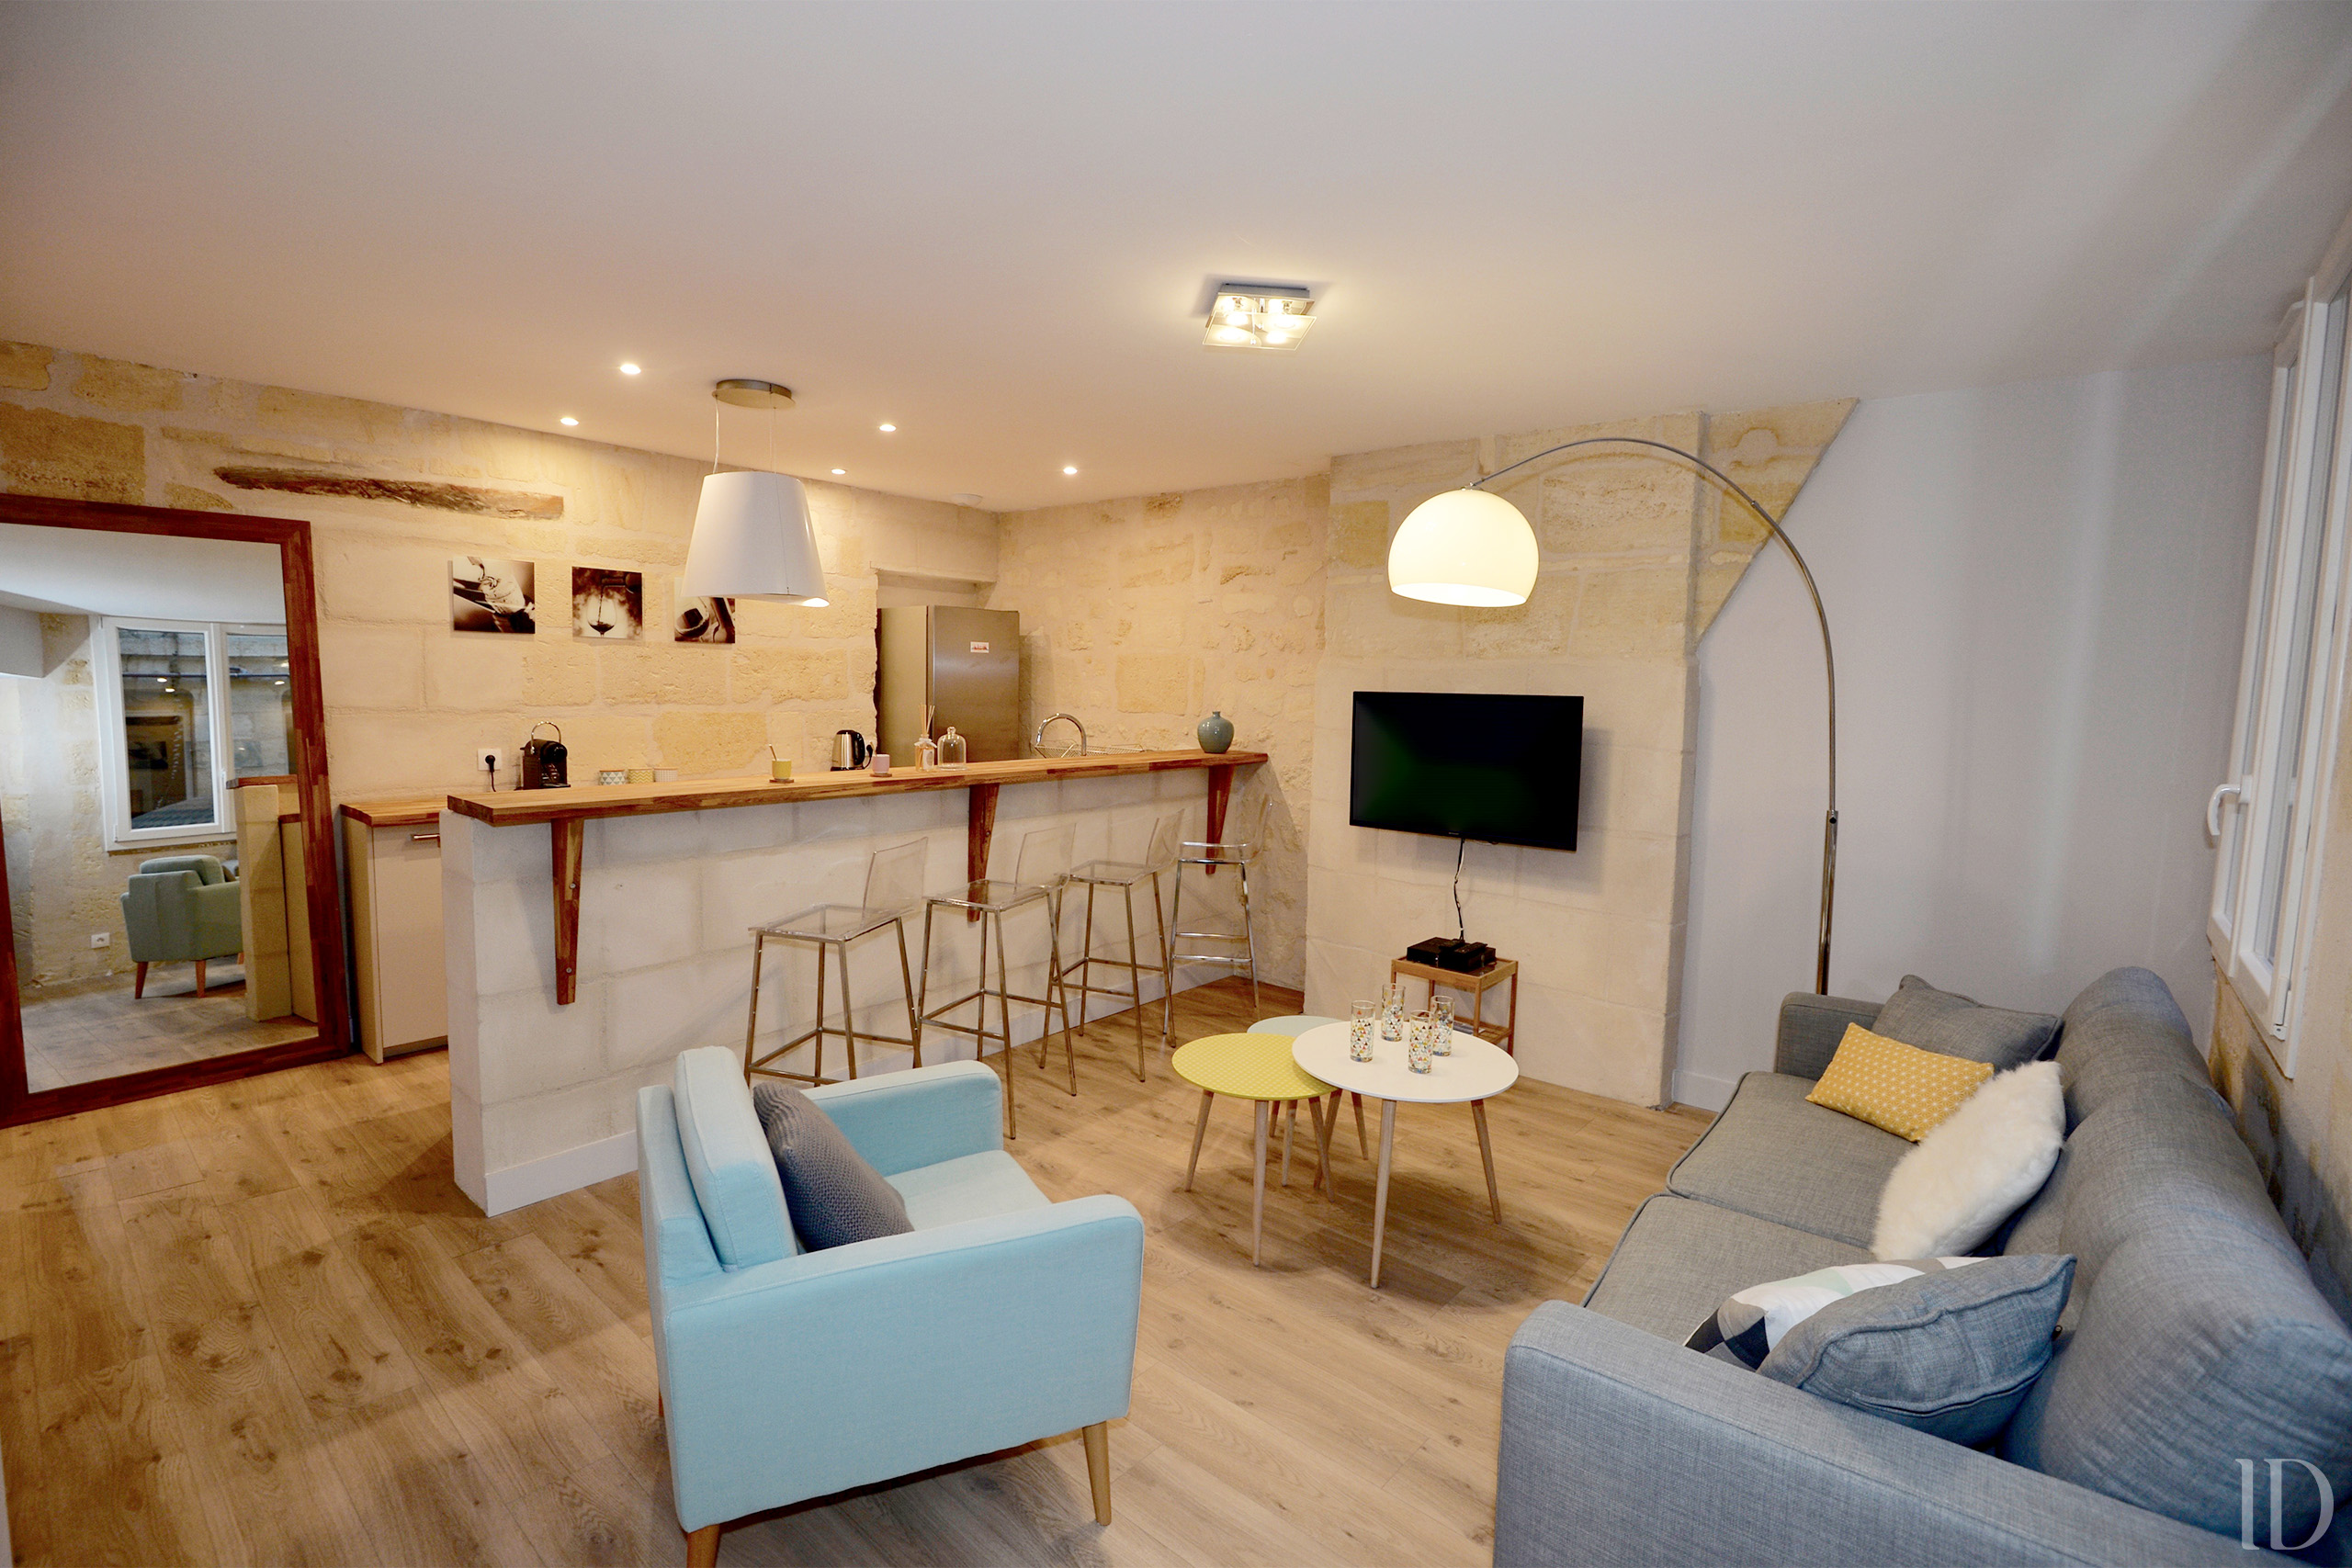 Rénovation d'un appartement à Bordeaux centre pour adaptation en établissement de nuit. Réalisation d'un espace cuisine ouvert sur le séjour avec mur en pierre apparente préservé.